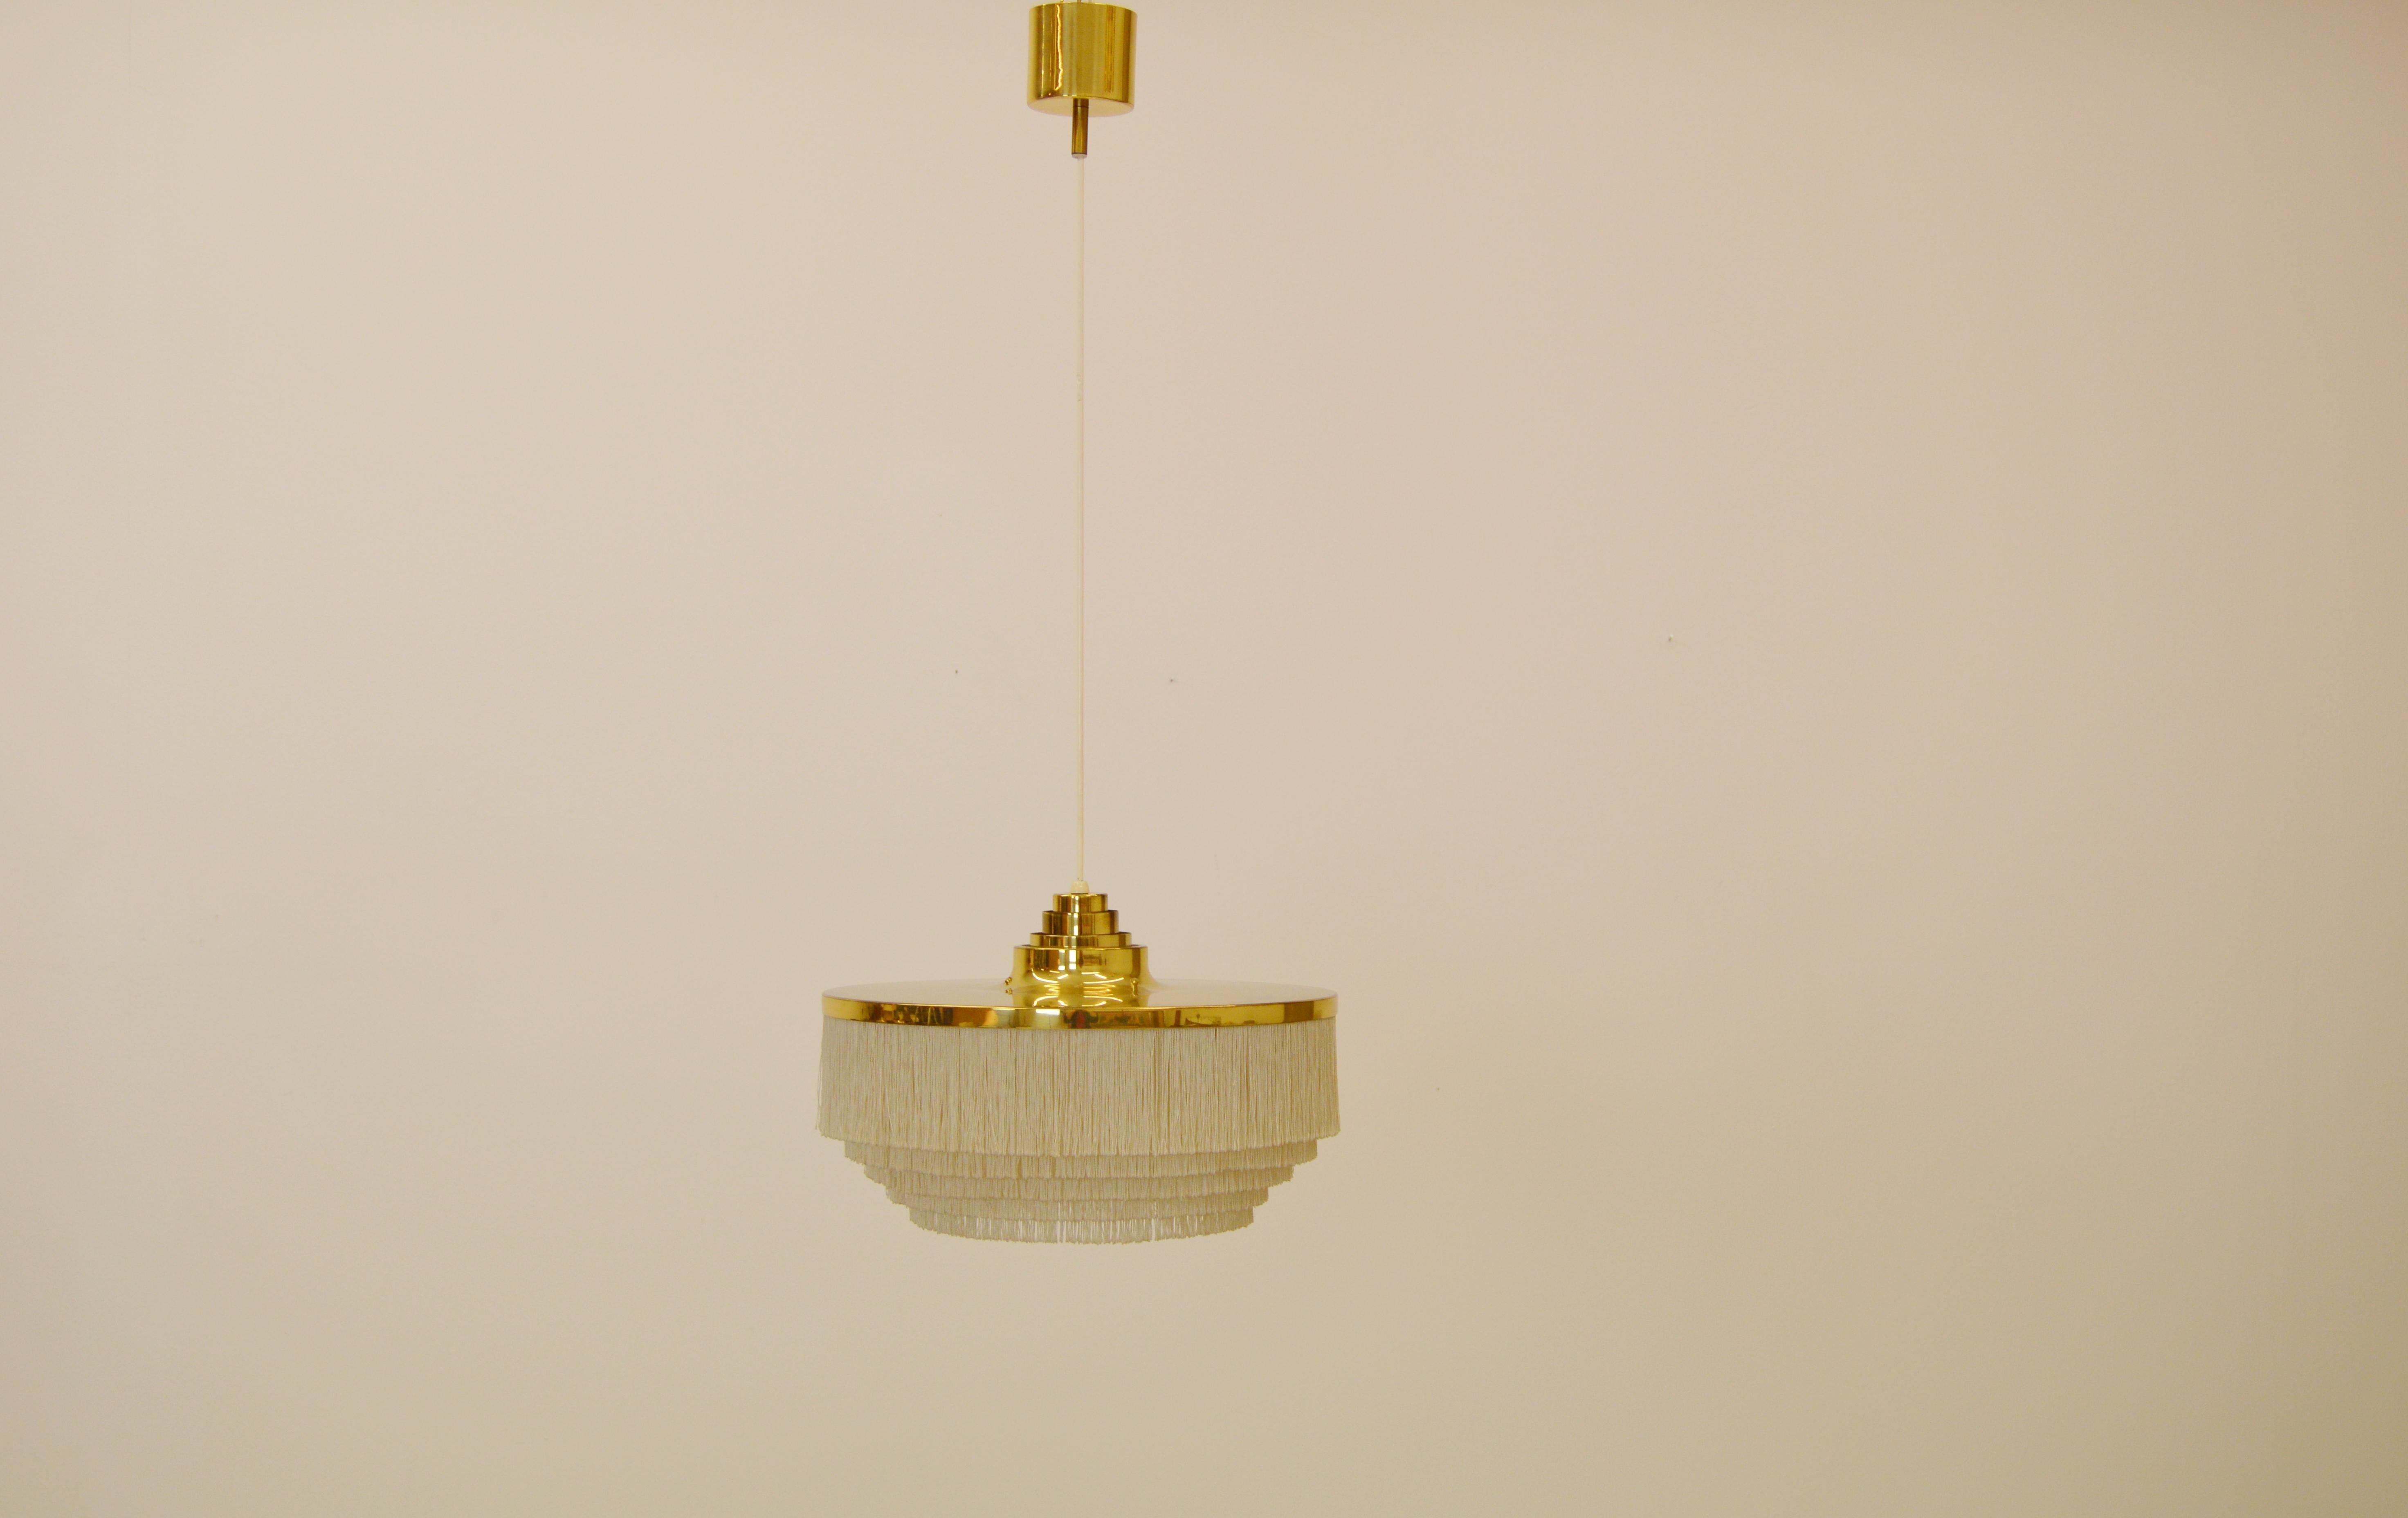 Silk fringe pendant ceiling lamp designed by Hans-Agne Jakobsson in Markaryd.